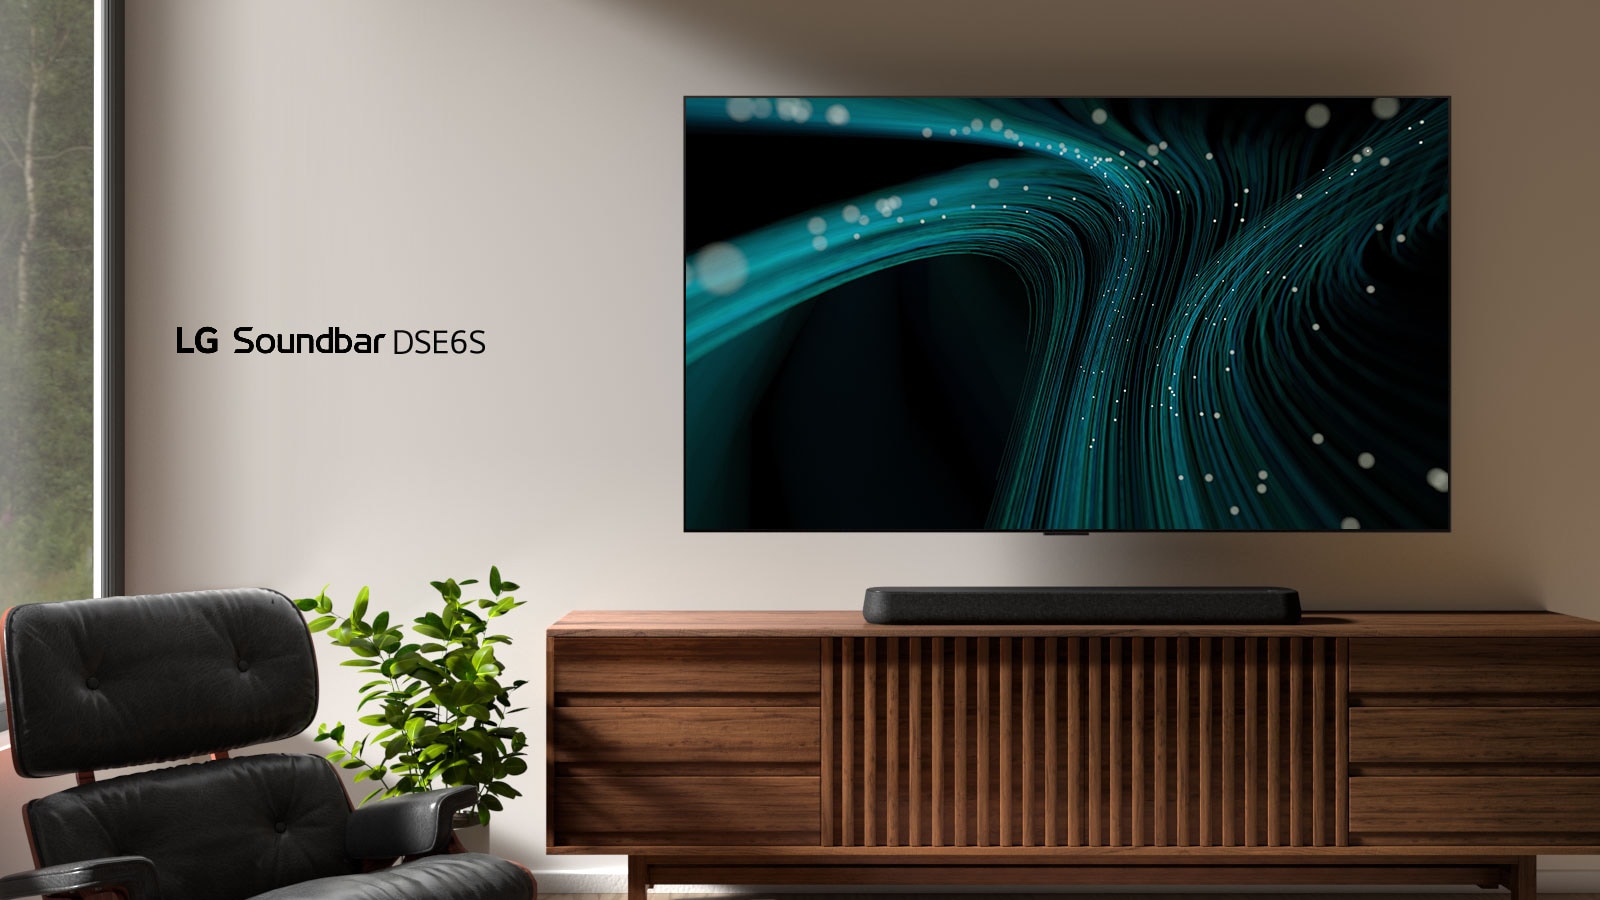 Die LG Soundbar DSE6S steht auf einem Holzgehäuse. Darüber ist ein wandmontierter Fernseher mit blauen Klangwellenbildern und gepunkteten Lichtern angebracht. Auf der linken Seite ist ein Fenster zu sehen und ein schwarzer Ledersessel steht vor einer grünen Pflanze.